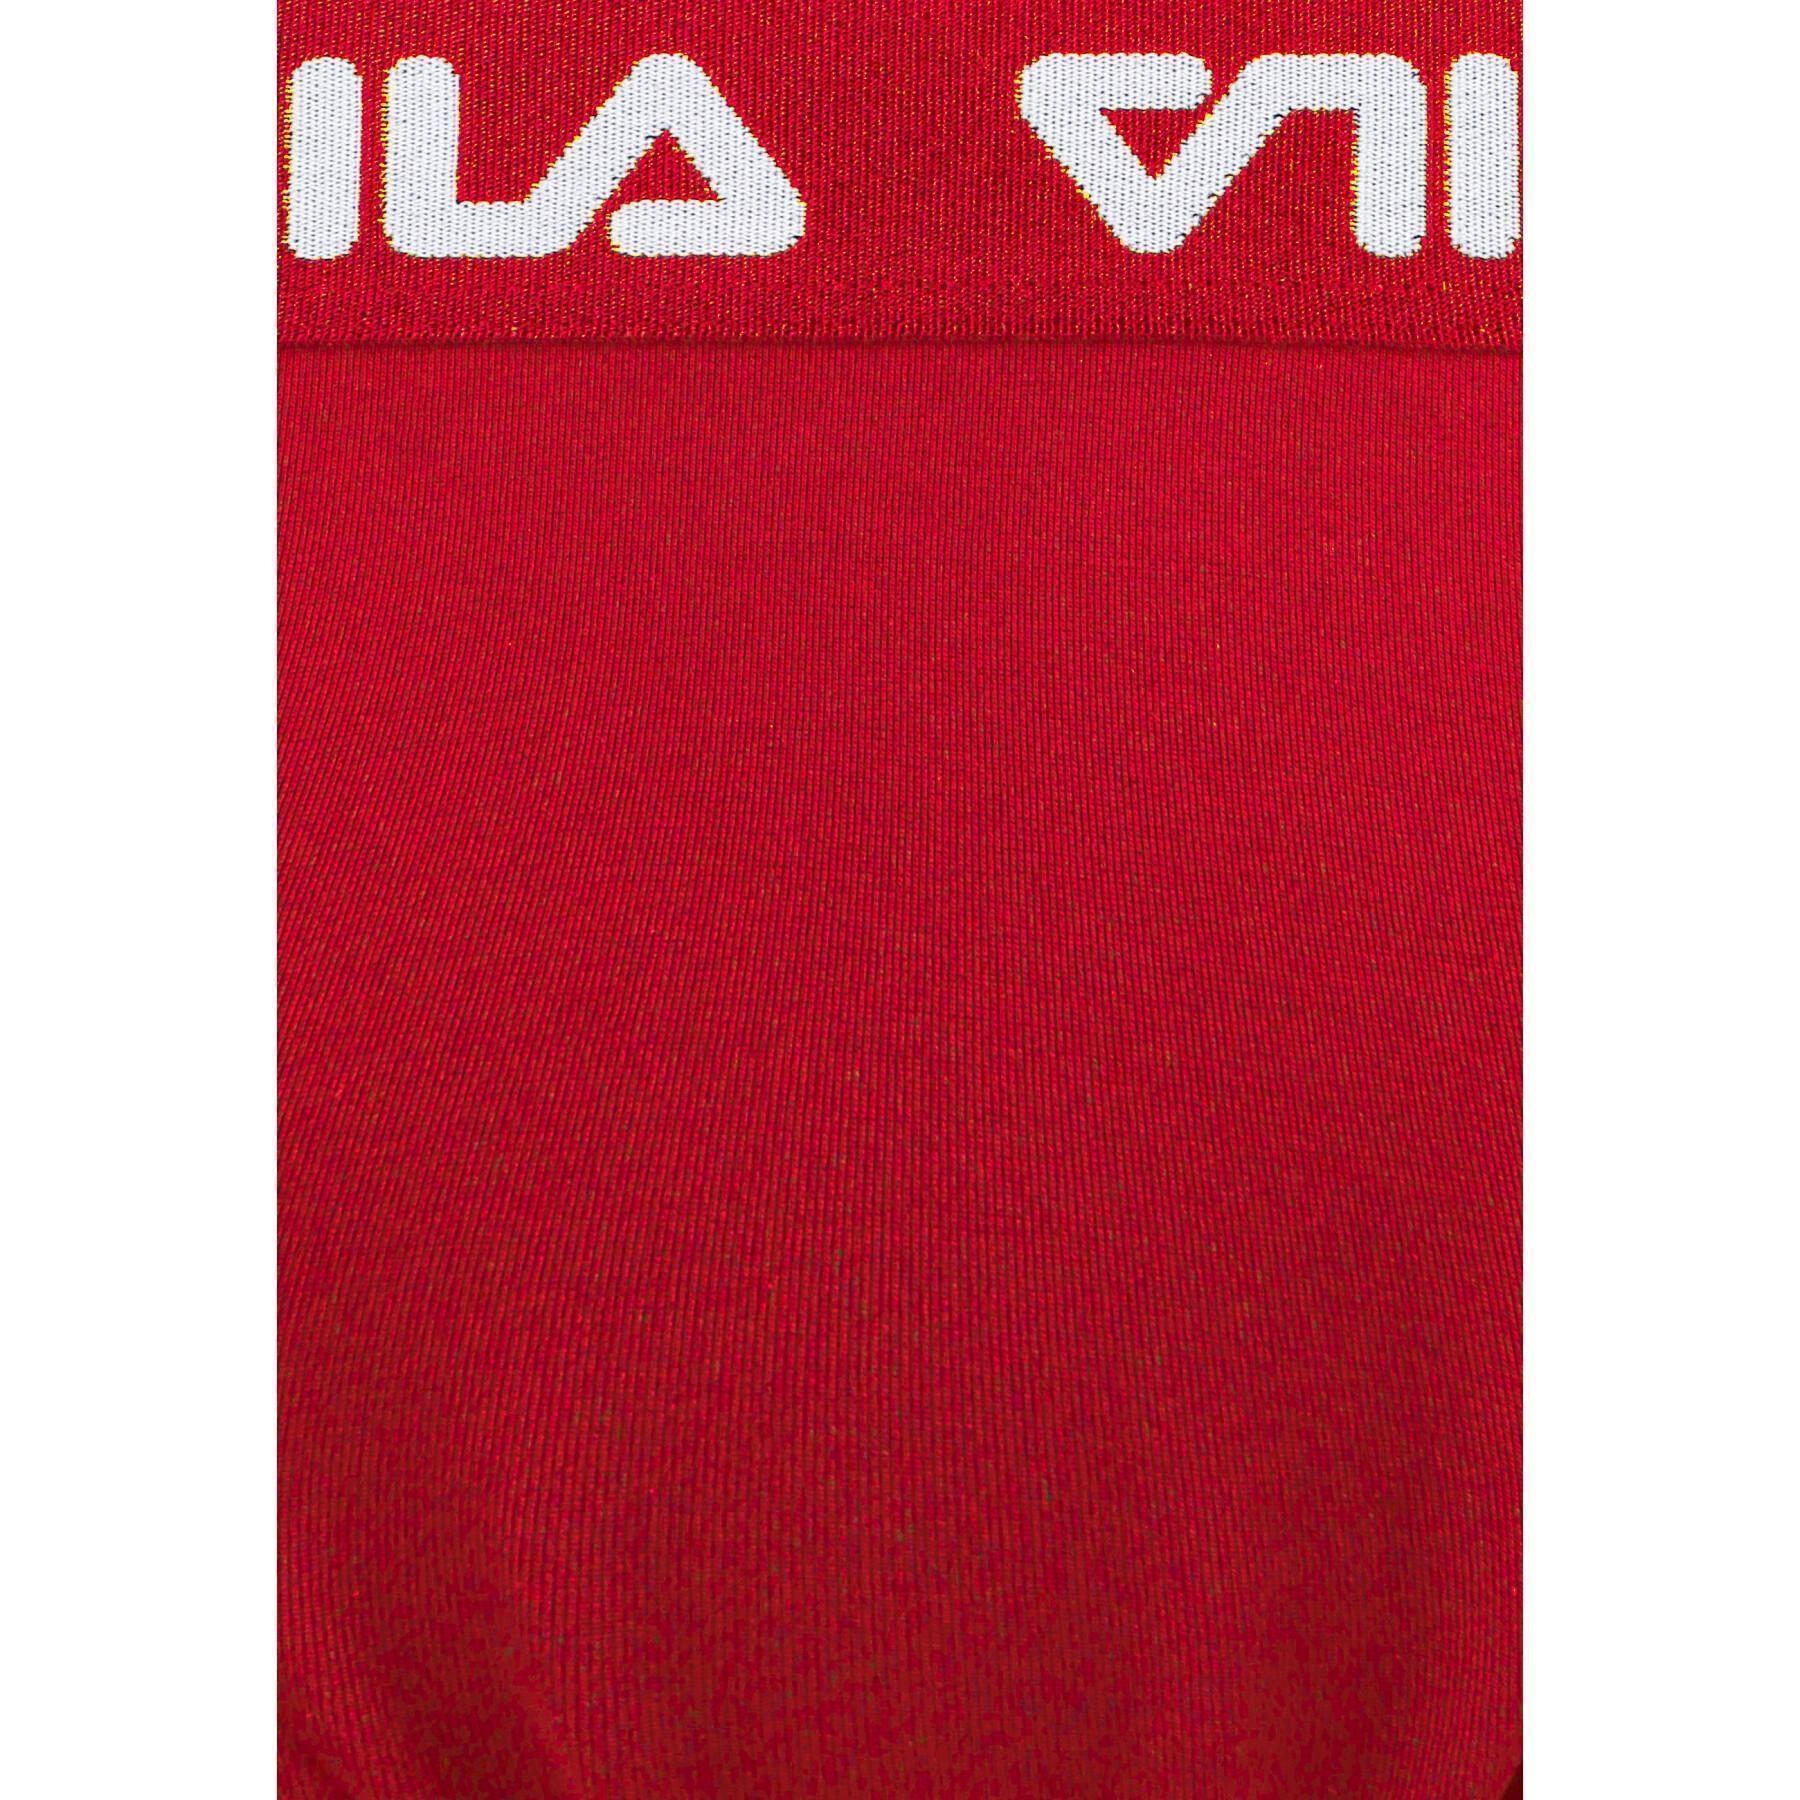 2-piece jersey for women Fila Split